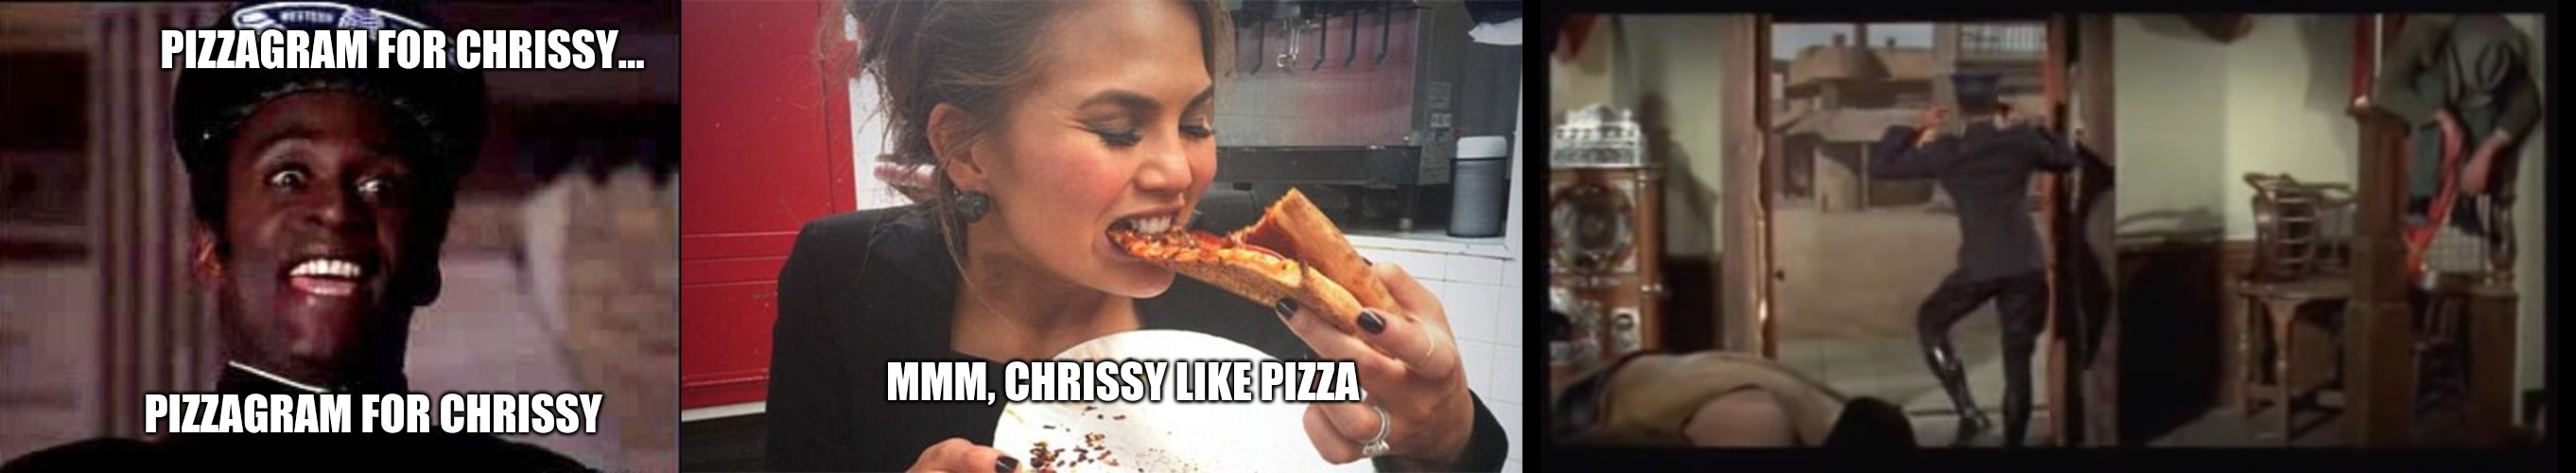 pizzagram for chrissy | PIZZAGRAM FOR CHRISSY... MMM, CHRISSY LIKE PIZZA; PIZZAGRAM FOR CHRISSY | image tagged in pizzagram for chrissy | made w/ Imgflip meme maker